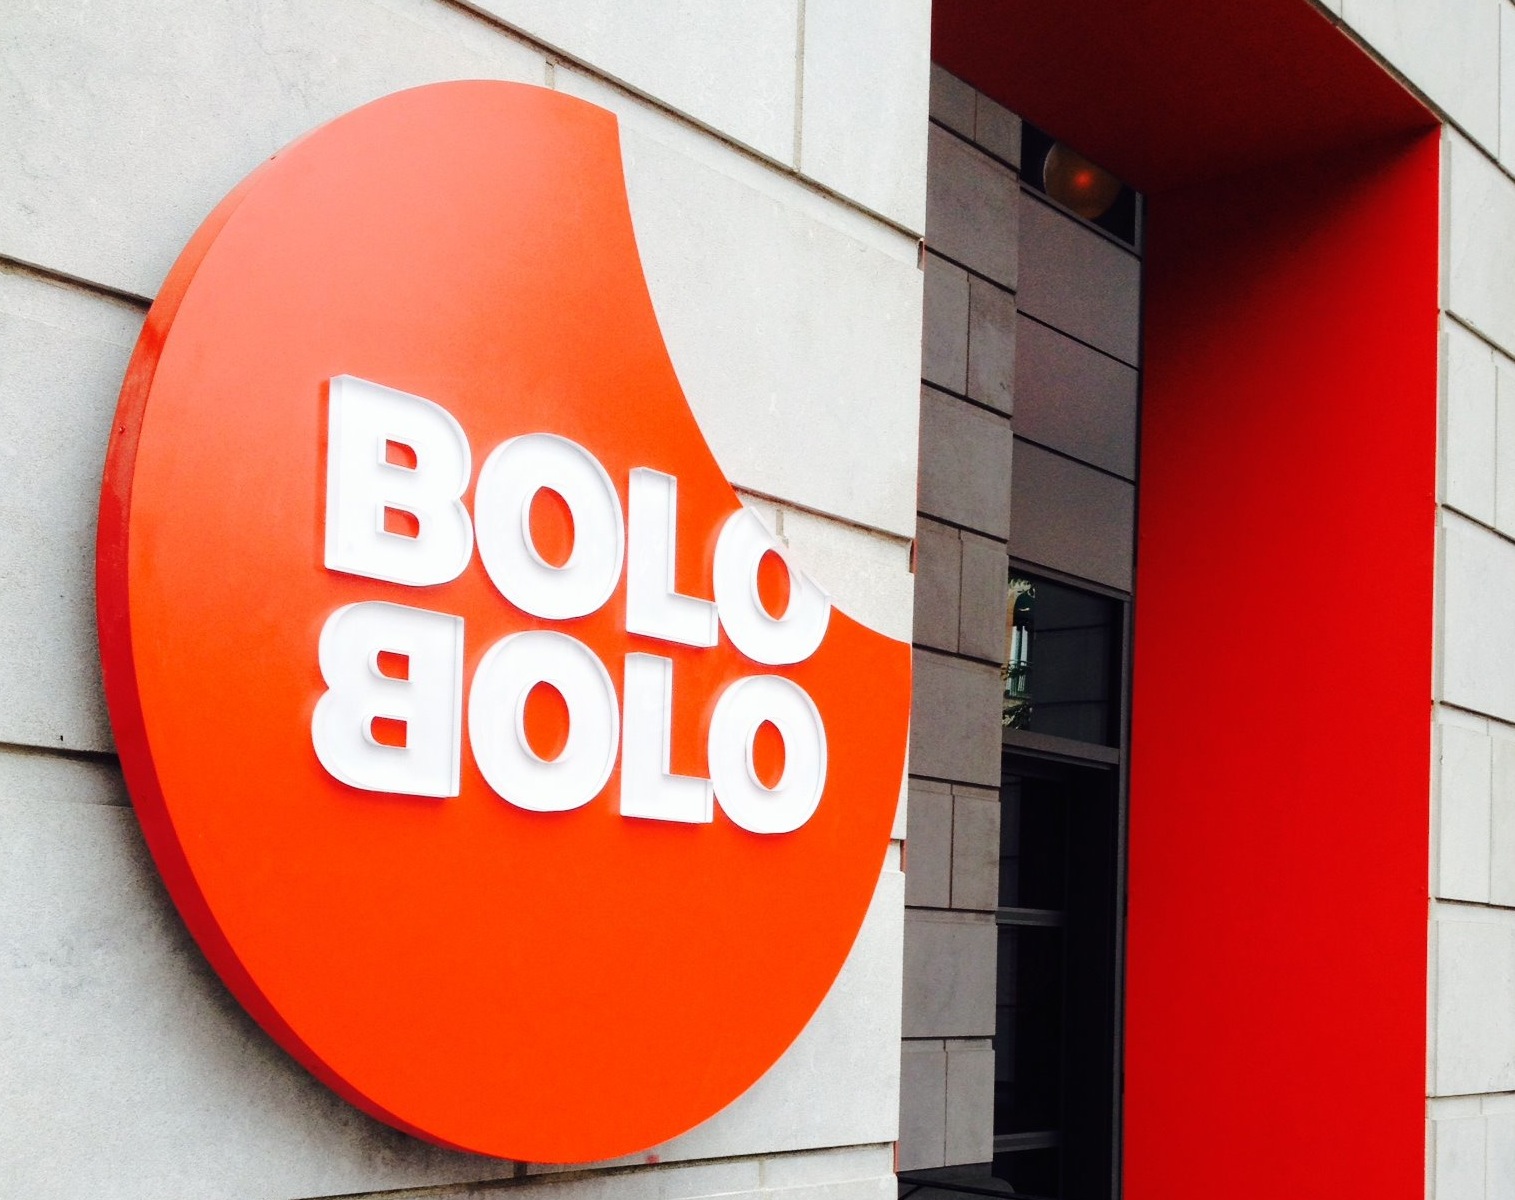 Bolo Bolo. Because YOLO?